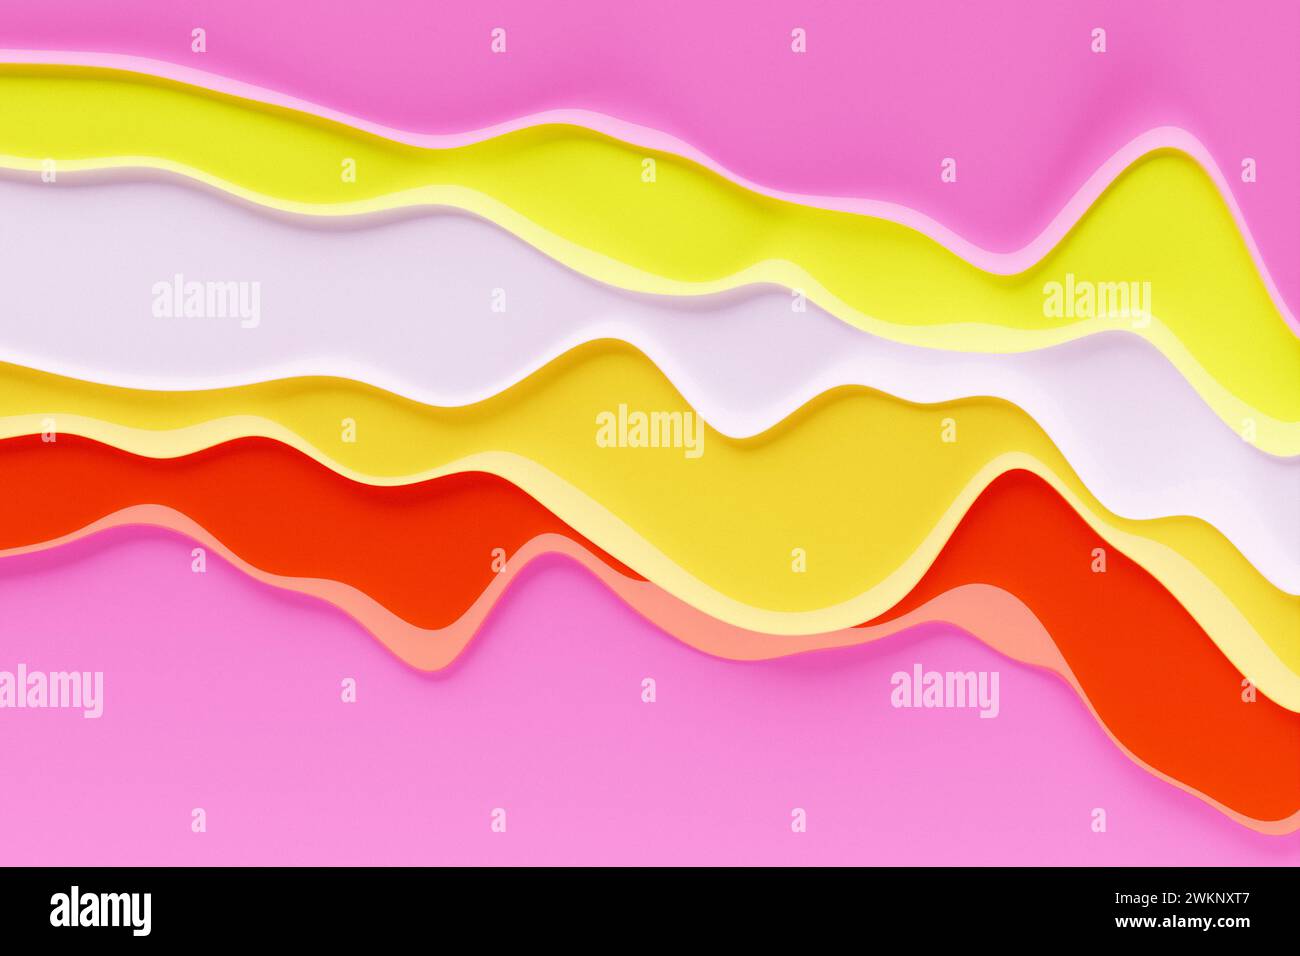 ilustración 3d de un fondo de gradiente abstracto púrpura clásico con líneas. Imprima desde las ondas. Textura gráfica moderna. Matriz geométrica. Foto de stock